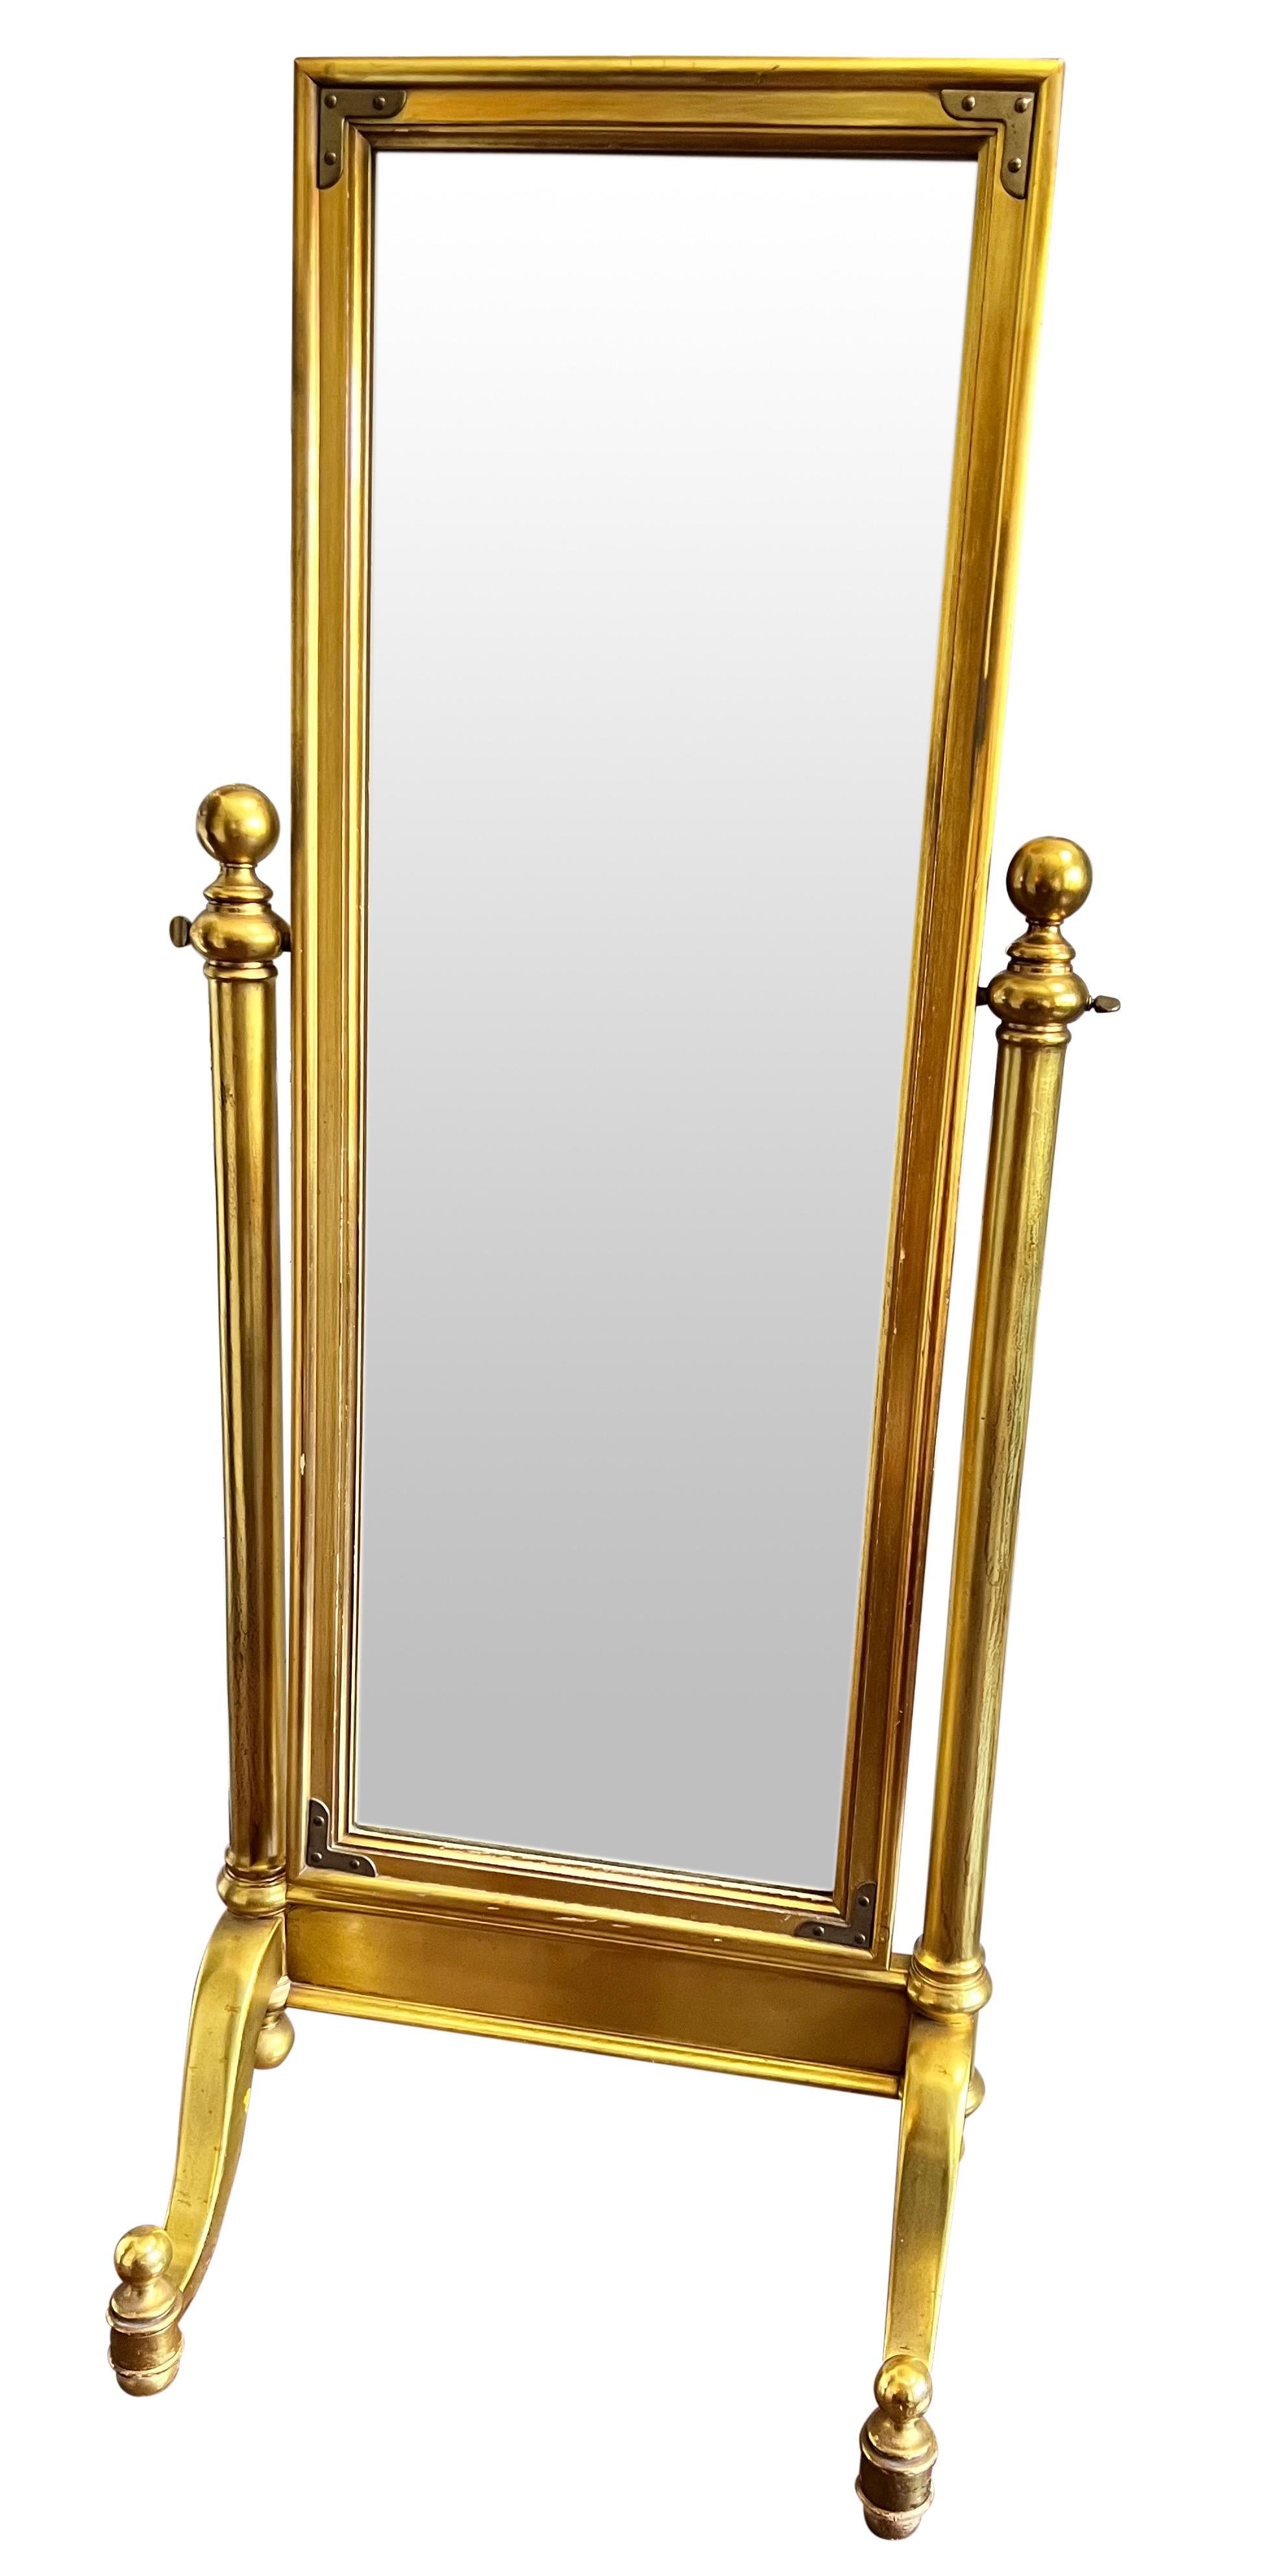 Fabuleux miroir chevaleresque en bois doré des années 1970. Robuste et bien conçu, le miroir repose sur une base gracieuse dotée de pieds et de fleurons en forme de boule. Il se caractérise par une finition soignée et des accents décoratifs en